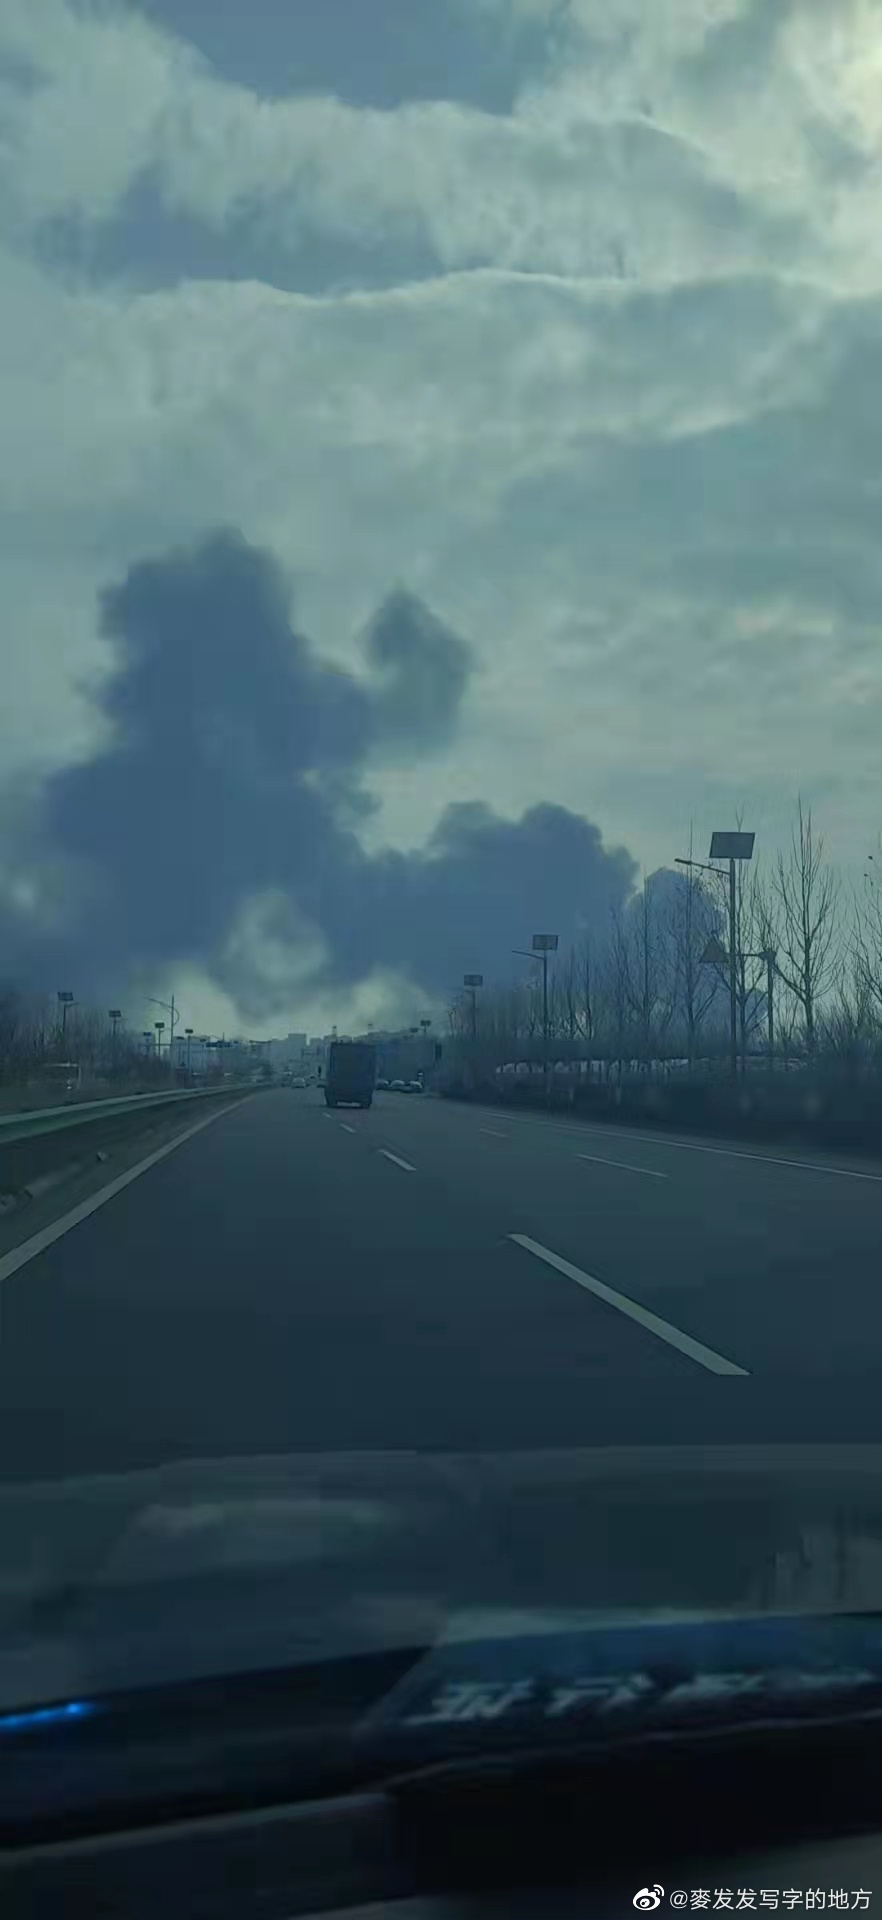 济南油罐车爆炸火焰冲天现场冒出大量黑烟。